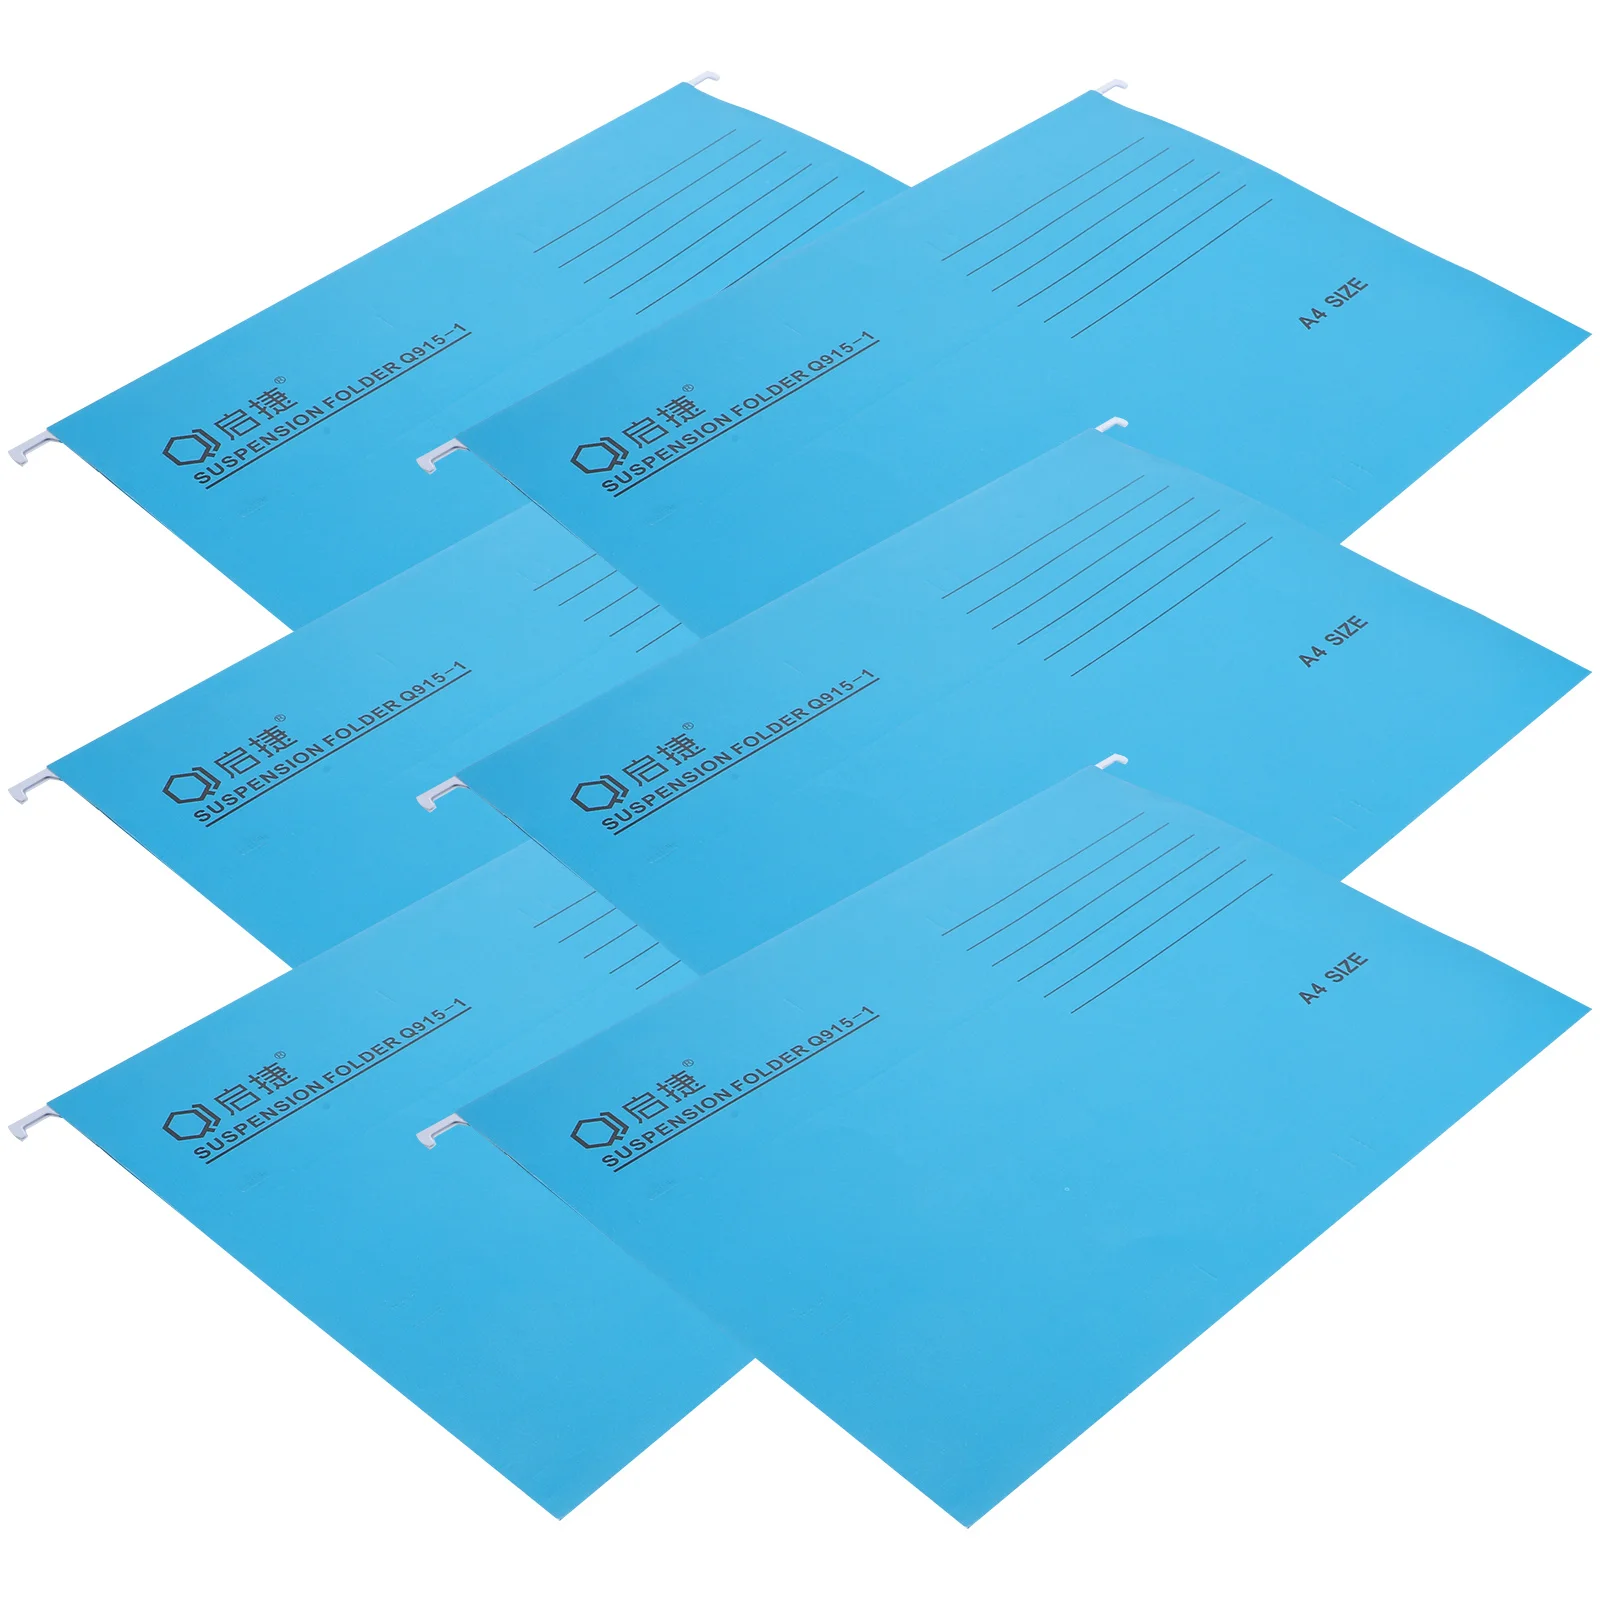 

Подвесные папки для файлов формата А4, 6 шт., цветные держатели для файлов, подвесные органайзеры для файлов